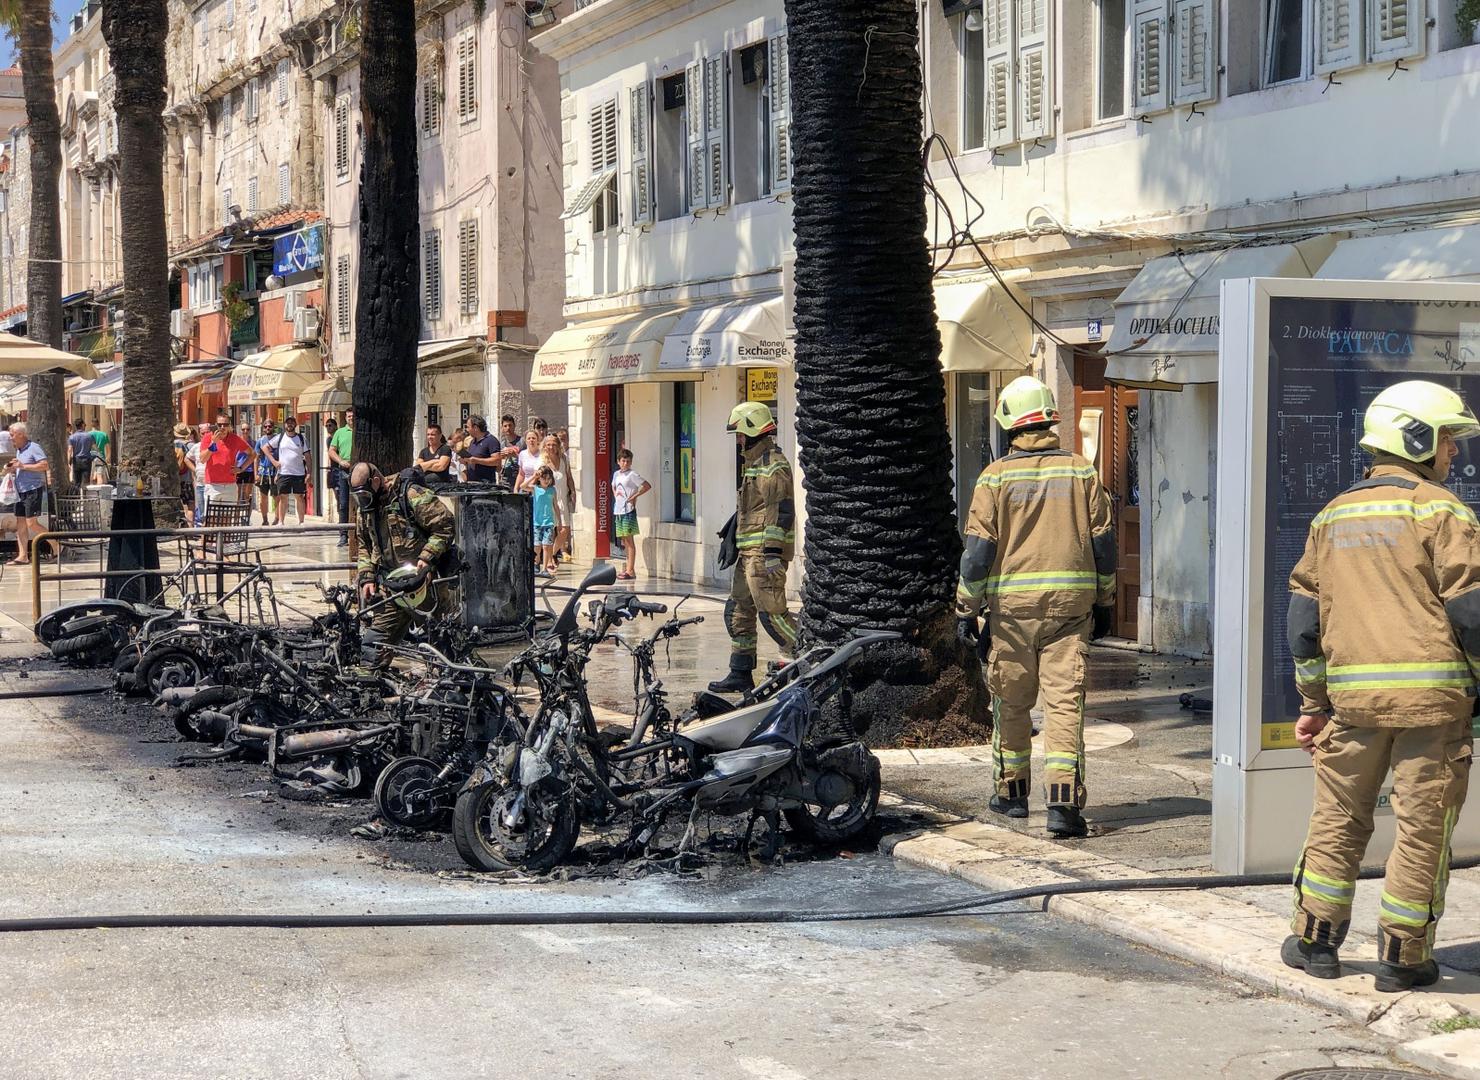 03.08.2020., Split - Vatrogasci vatrogasne postrojbe Split gase desetak zapaljenih motocikala na Rivi. Photo: Ivo Cagalj/PIXSELL